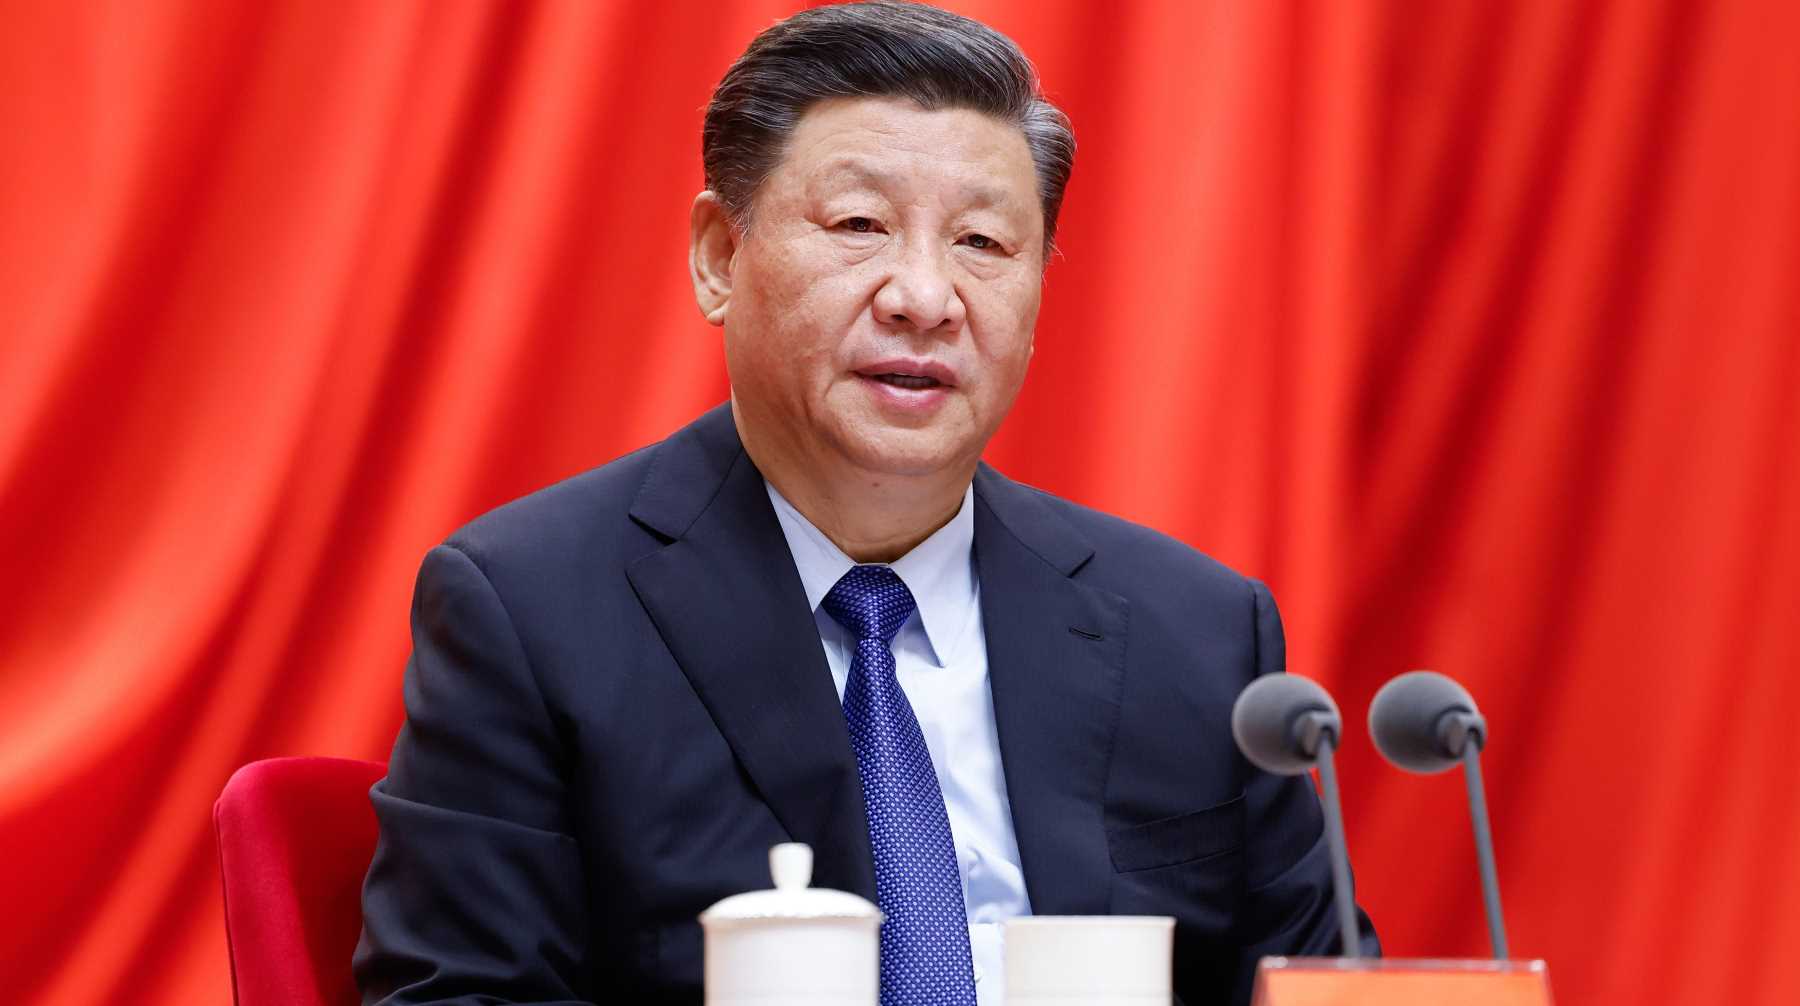 Лидер КНР также воздержался от угроз в адрес США и Европы, подчеркнув, что Китай «занимает объективную позицию» Фото: © Global Look Press / Huang Jingwen